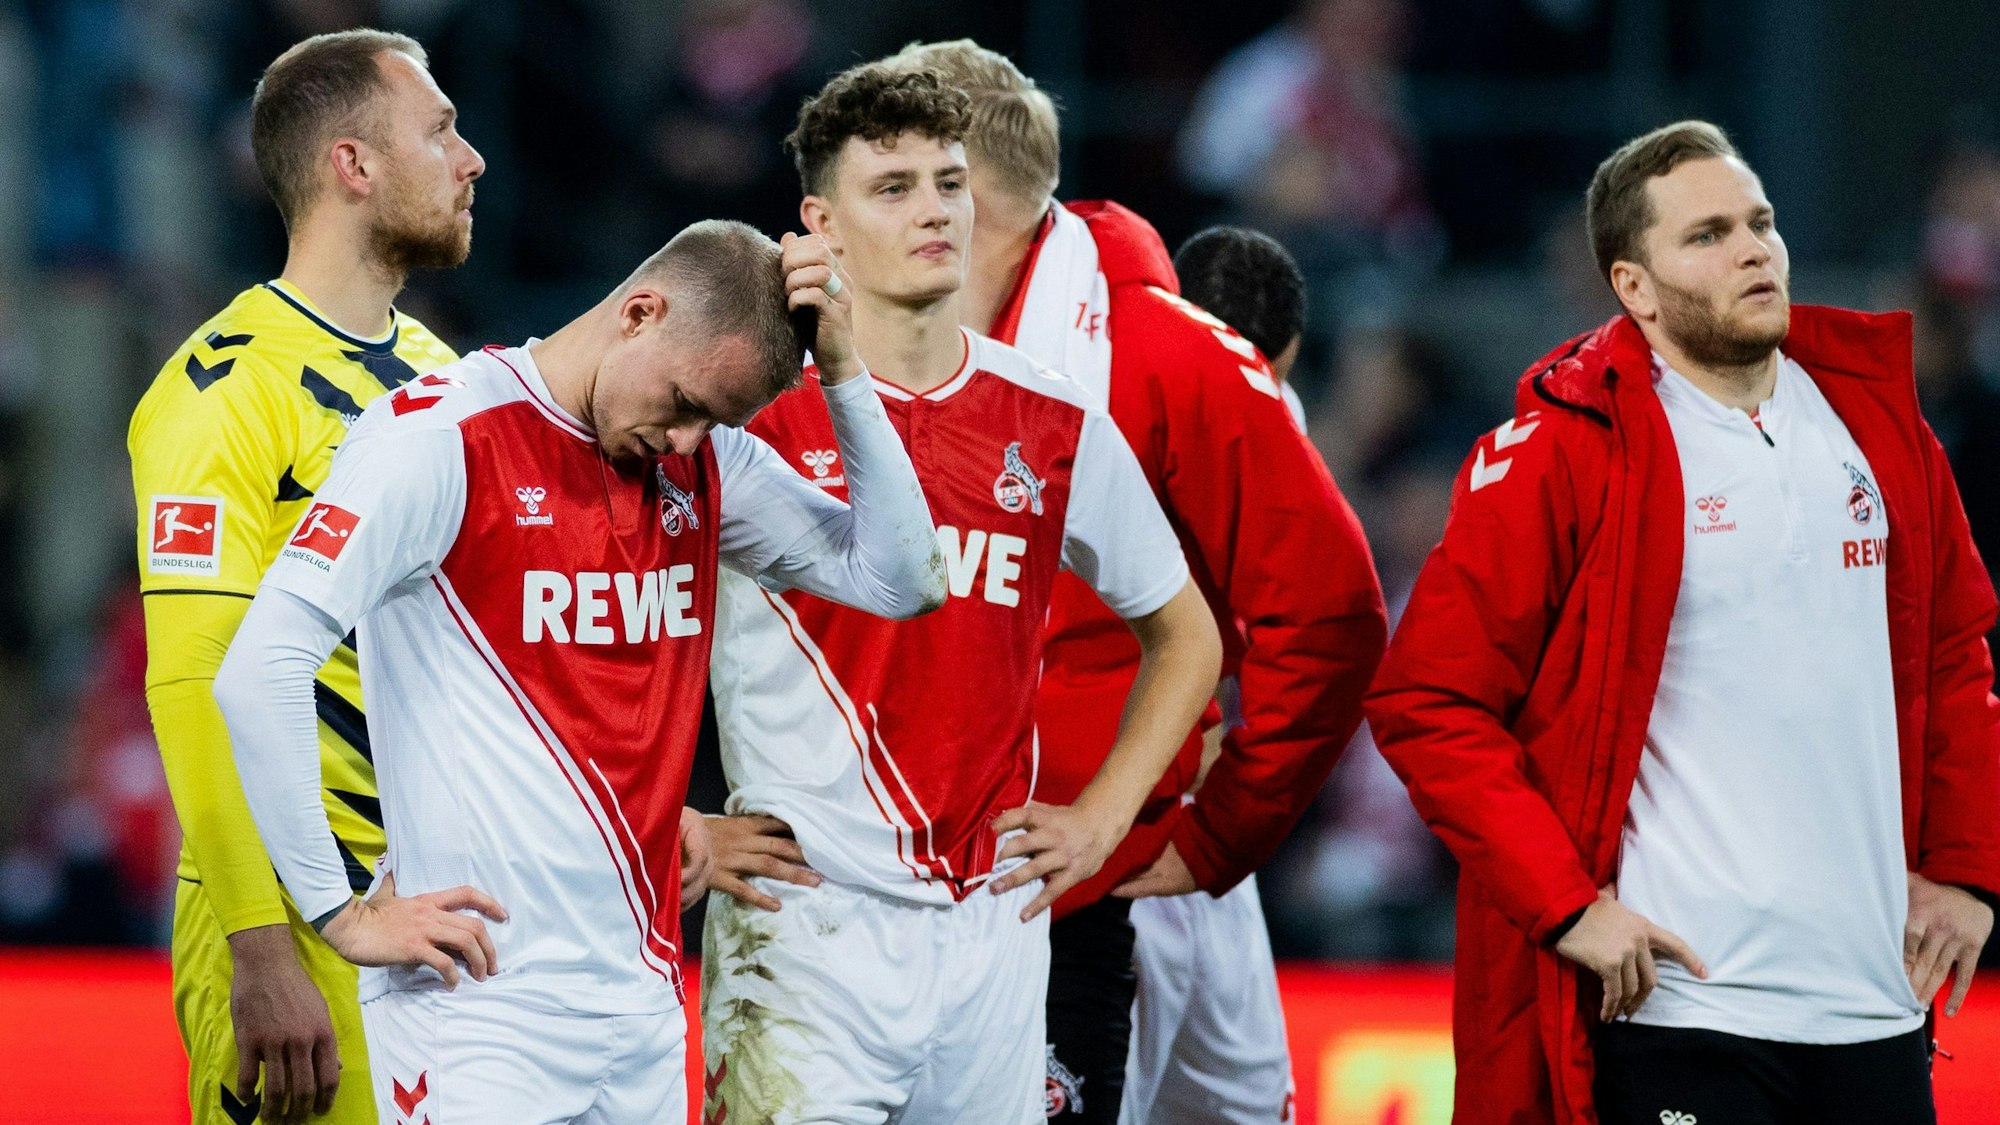 Nach dem Schlusspfiff nehmen die Spieler des 1. FC Köln vor der Südtribüne Abschied von ihren Fans. Kein Spieler lächelt, dabei erhielt die Mannschaft viel Applaus für eine engagierte Leistung.